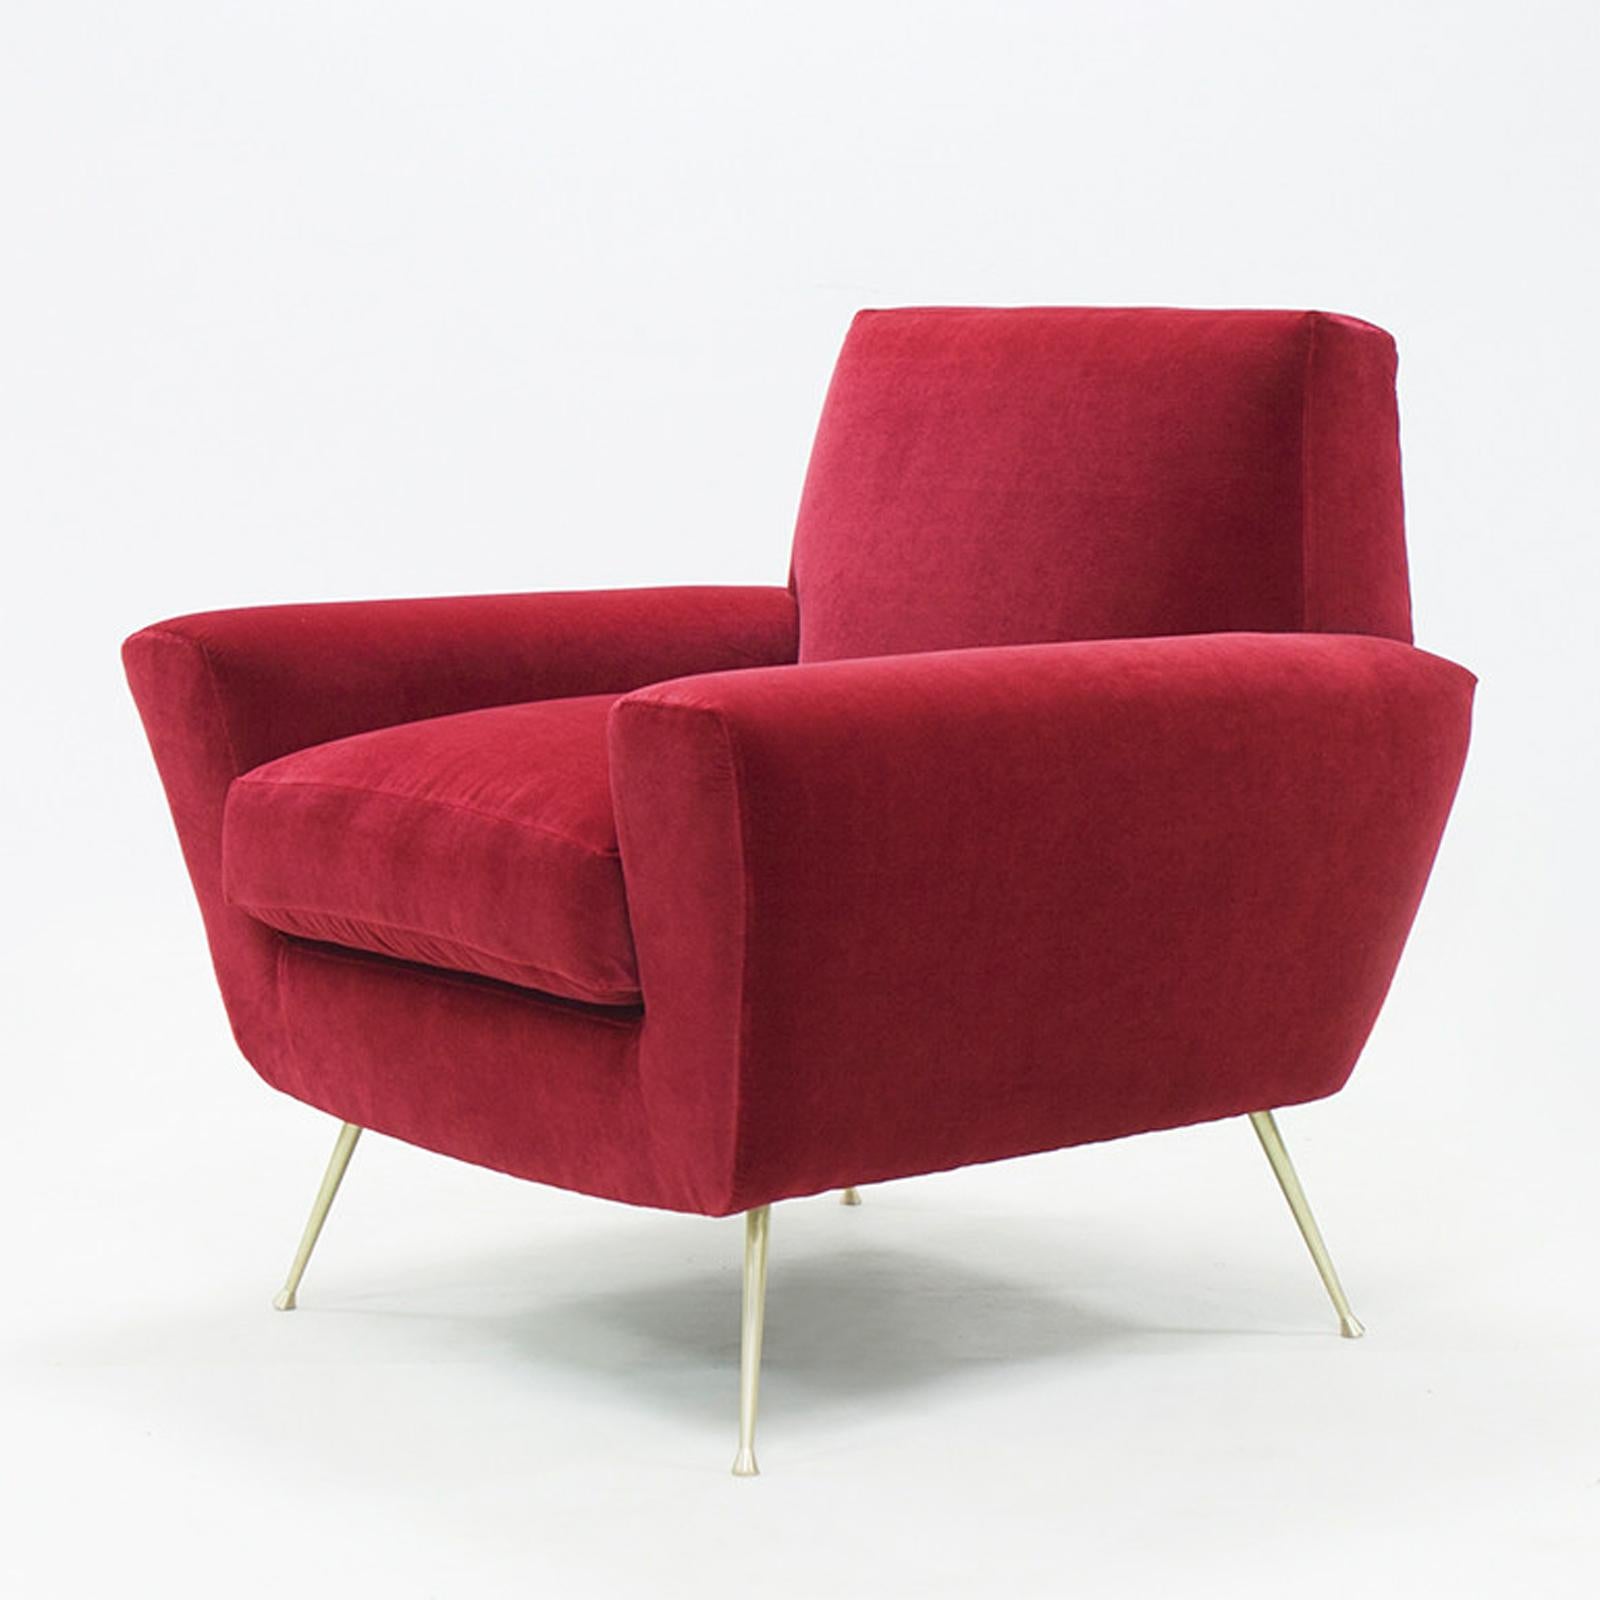 Sessel Ruby mit Struktur aus massivem
holz. Gepolstert und bezogen mit 
hochwertiger rubinroter Samtstoff.
Völlig handgefertigtes Stück.
Auf Anfrage auch mit anderen Stoffen erhältlich.